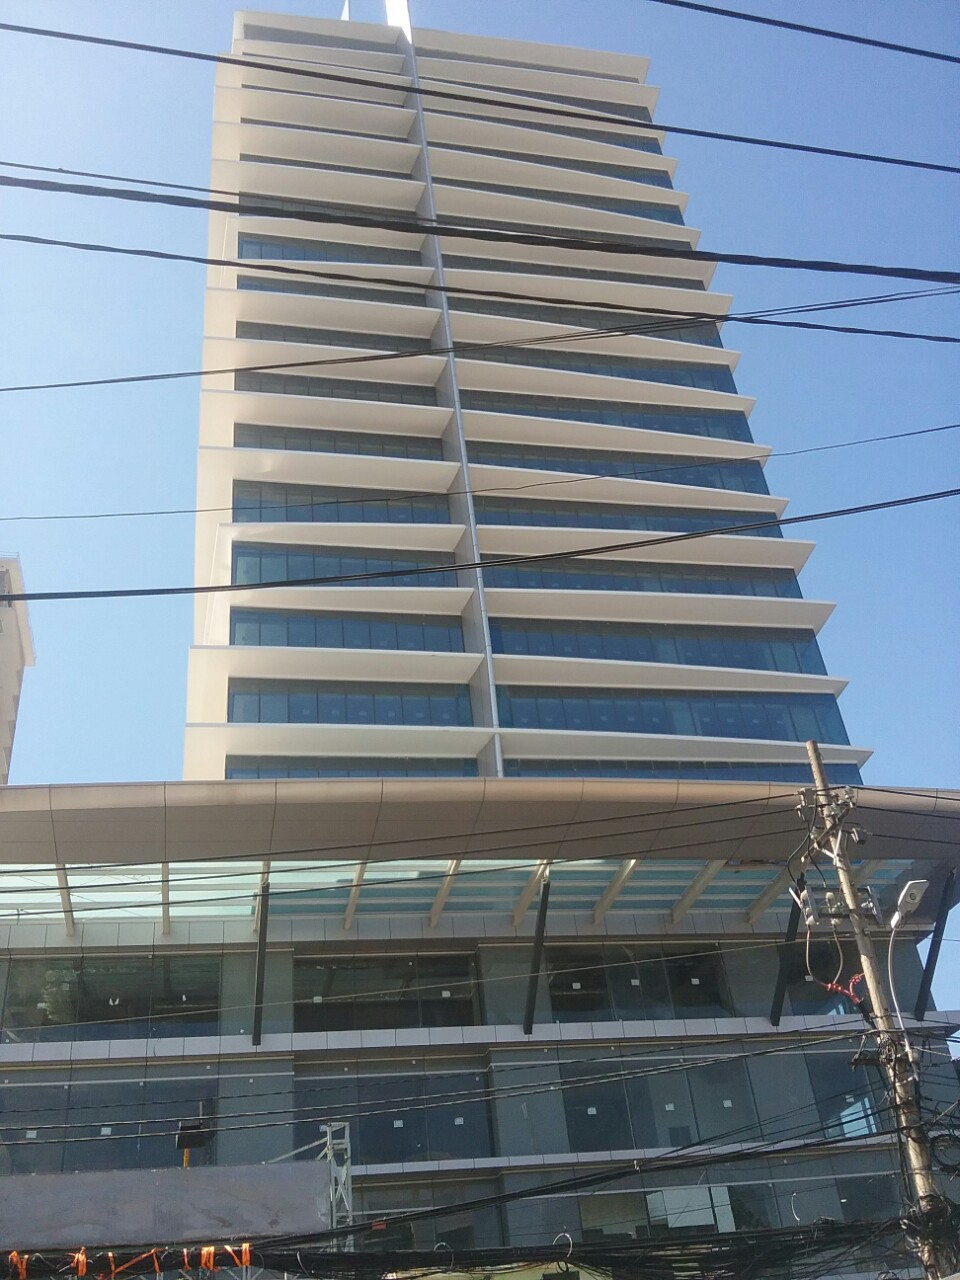 Văn phòng tòa nhà lớn bậc nhất quận 10 - Viettel Complex, ngay vòng xoay Dân Chủ Cách Mạng Tháng 8